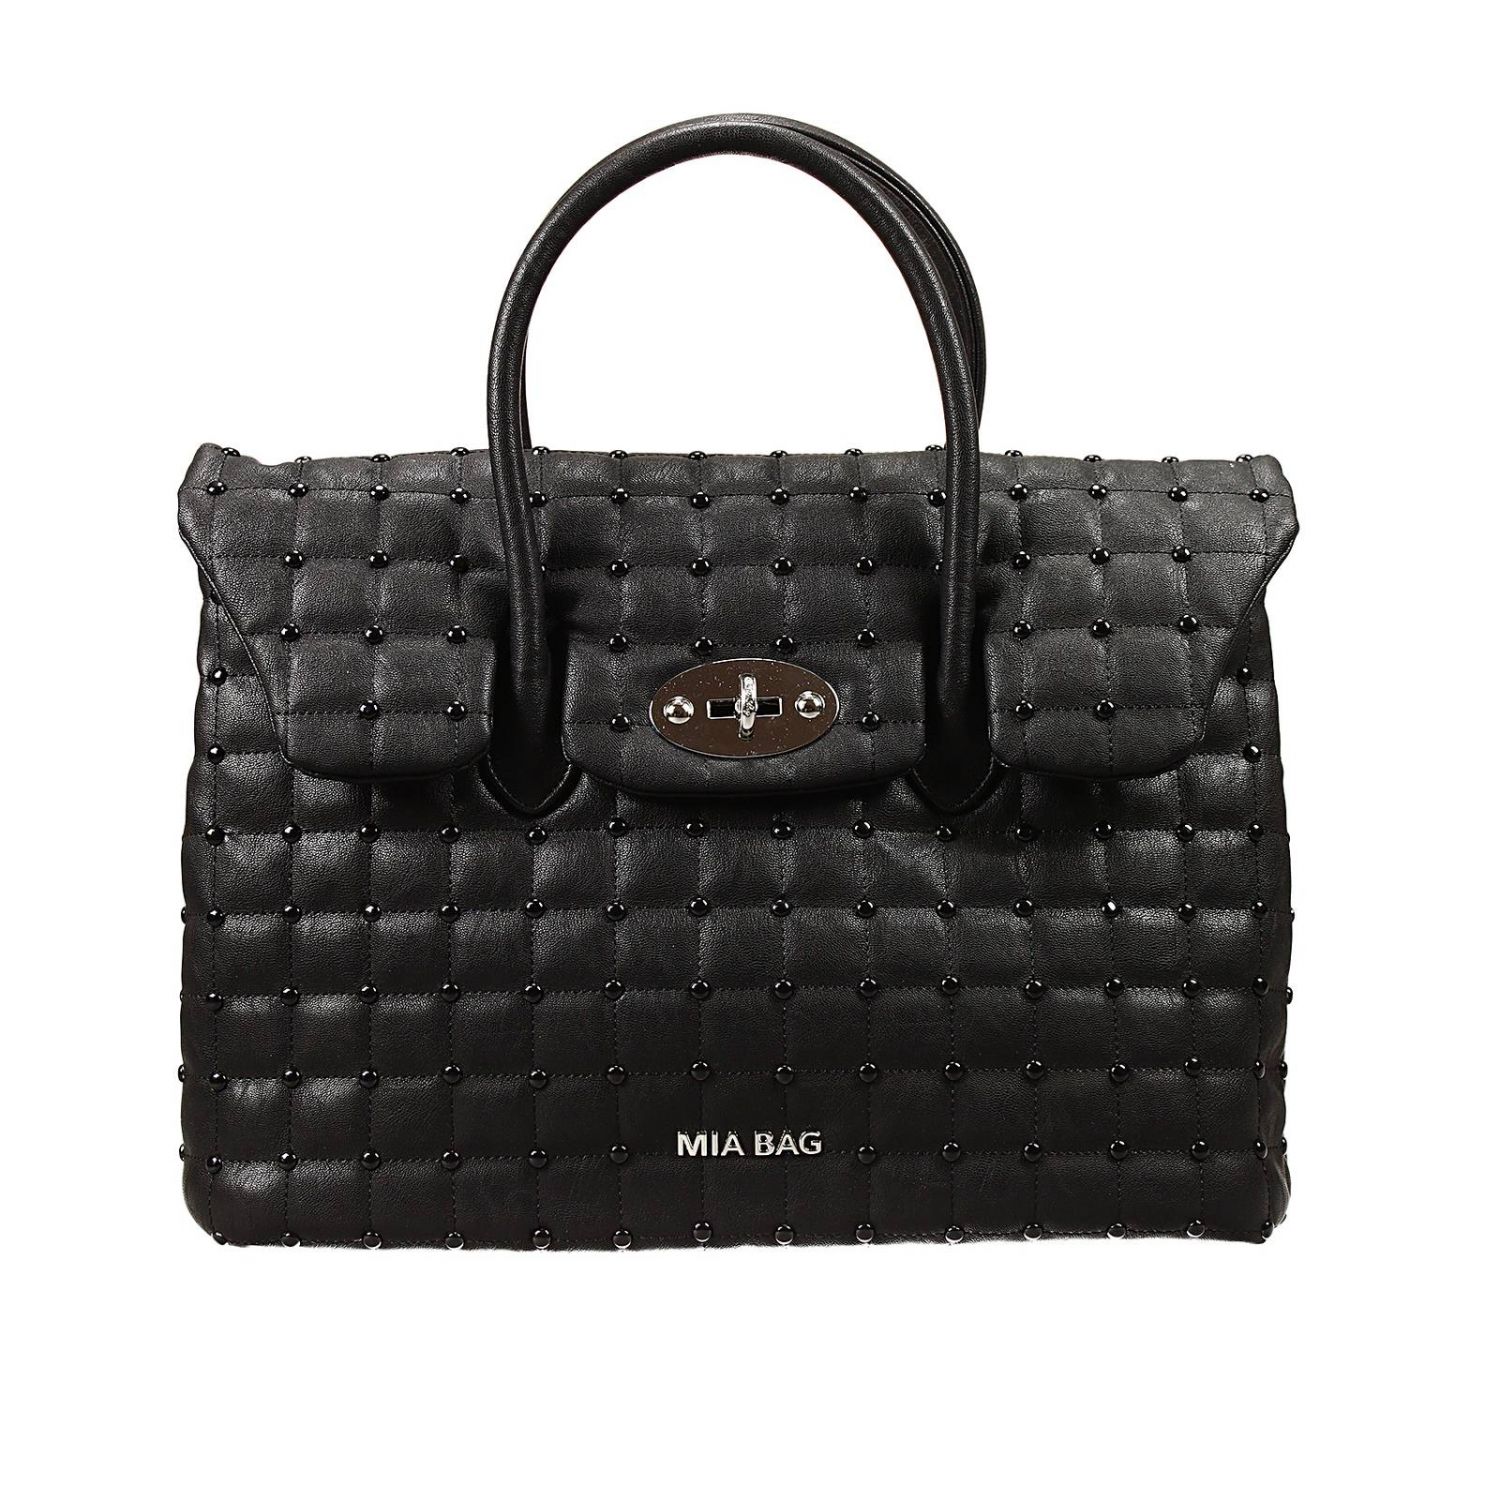 Mia Bag Outlet: bag 2 handles eco leather with studds | Shoulder Bag ...